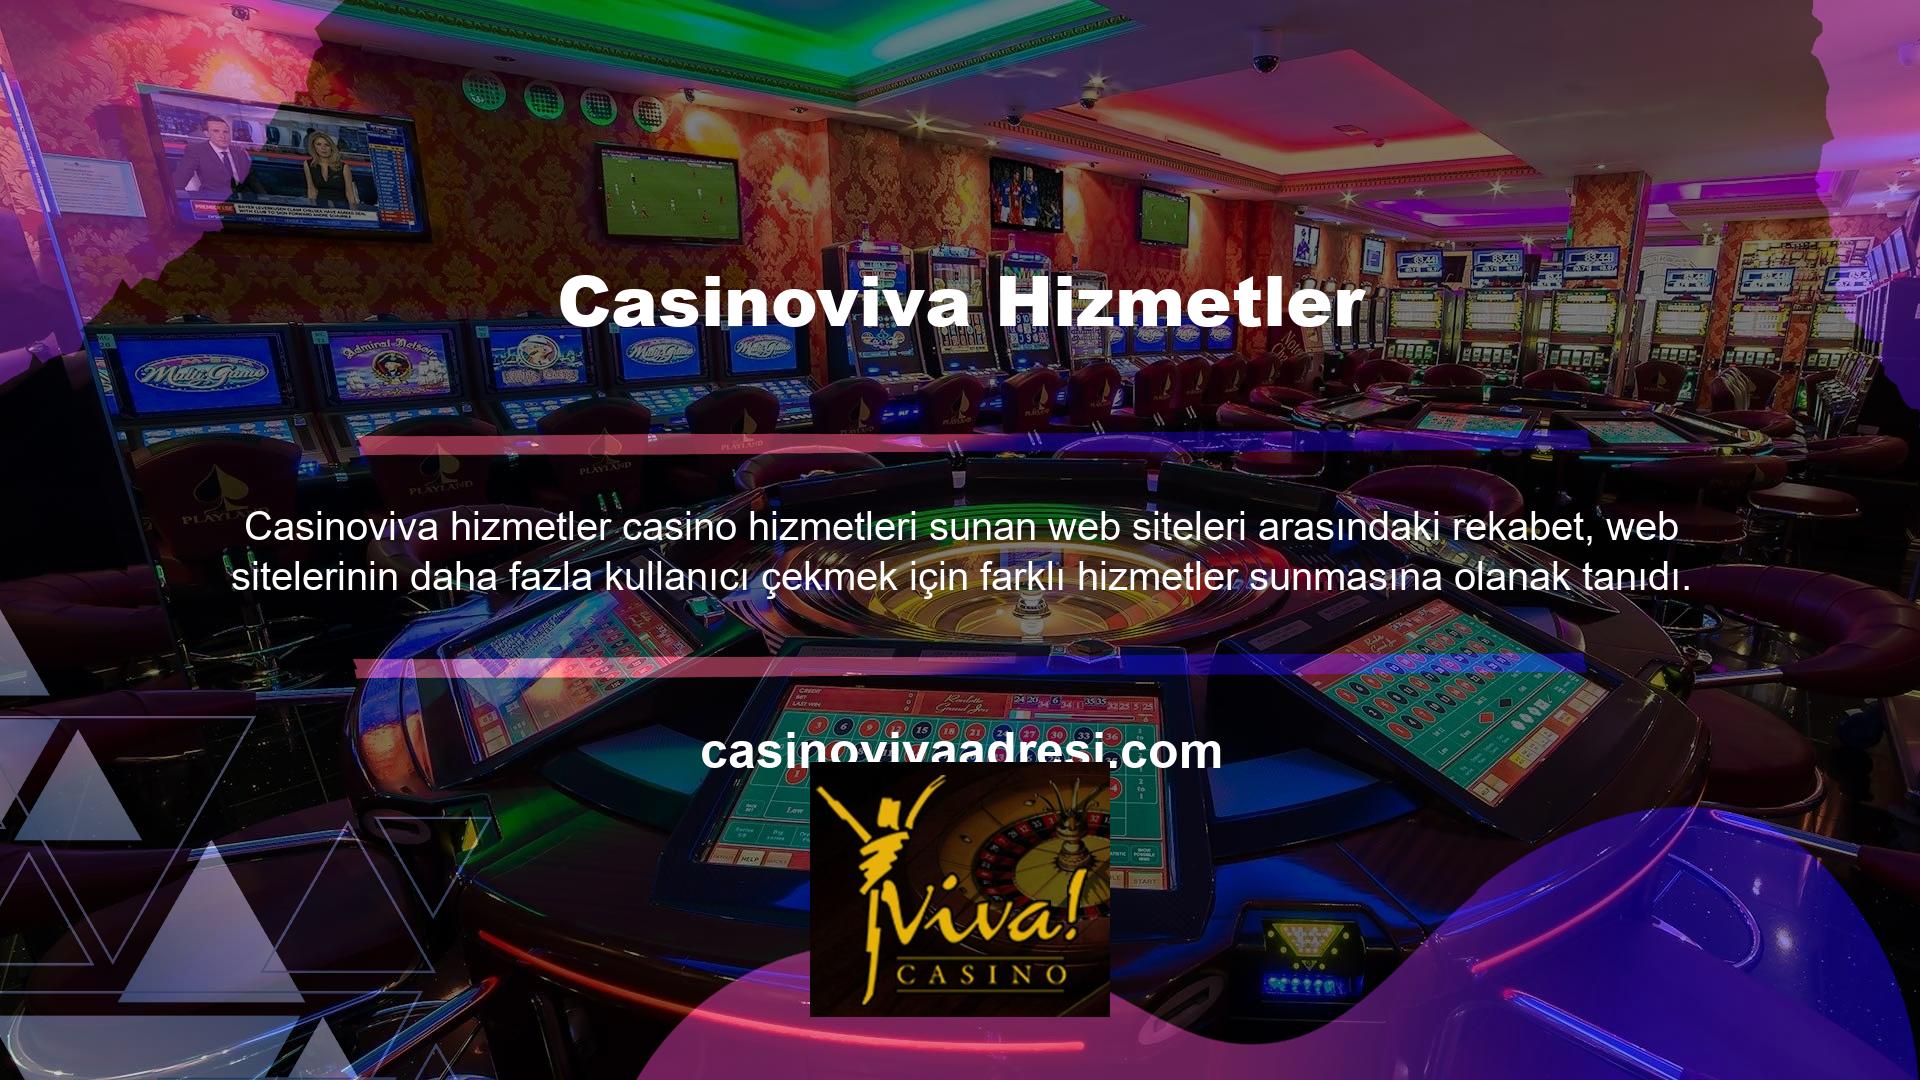 Casinoviva web sitesinde daha fazla üye çekmek için ayrıntılı bonuslar da sunulmaktadır